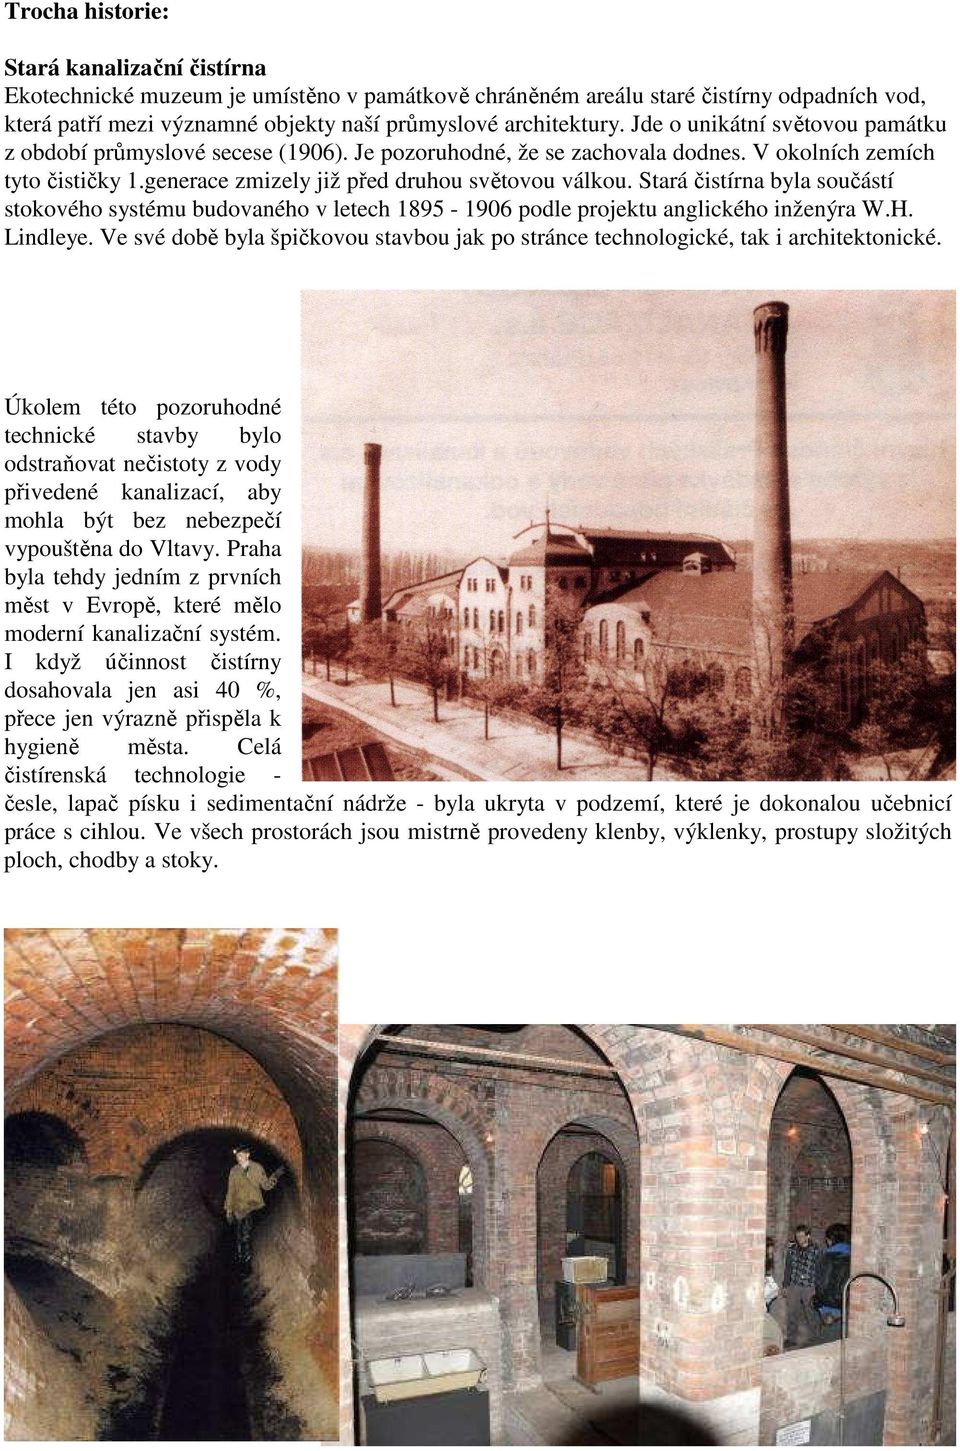 Stará čistírna byla součástí stokového systému budovaného v letech 1895-1906 podle projektu anglického inženýra W.H. Lindleye.